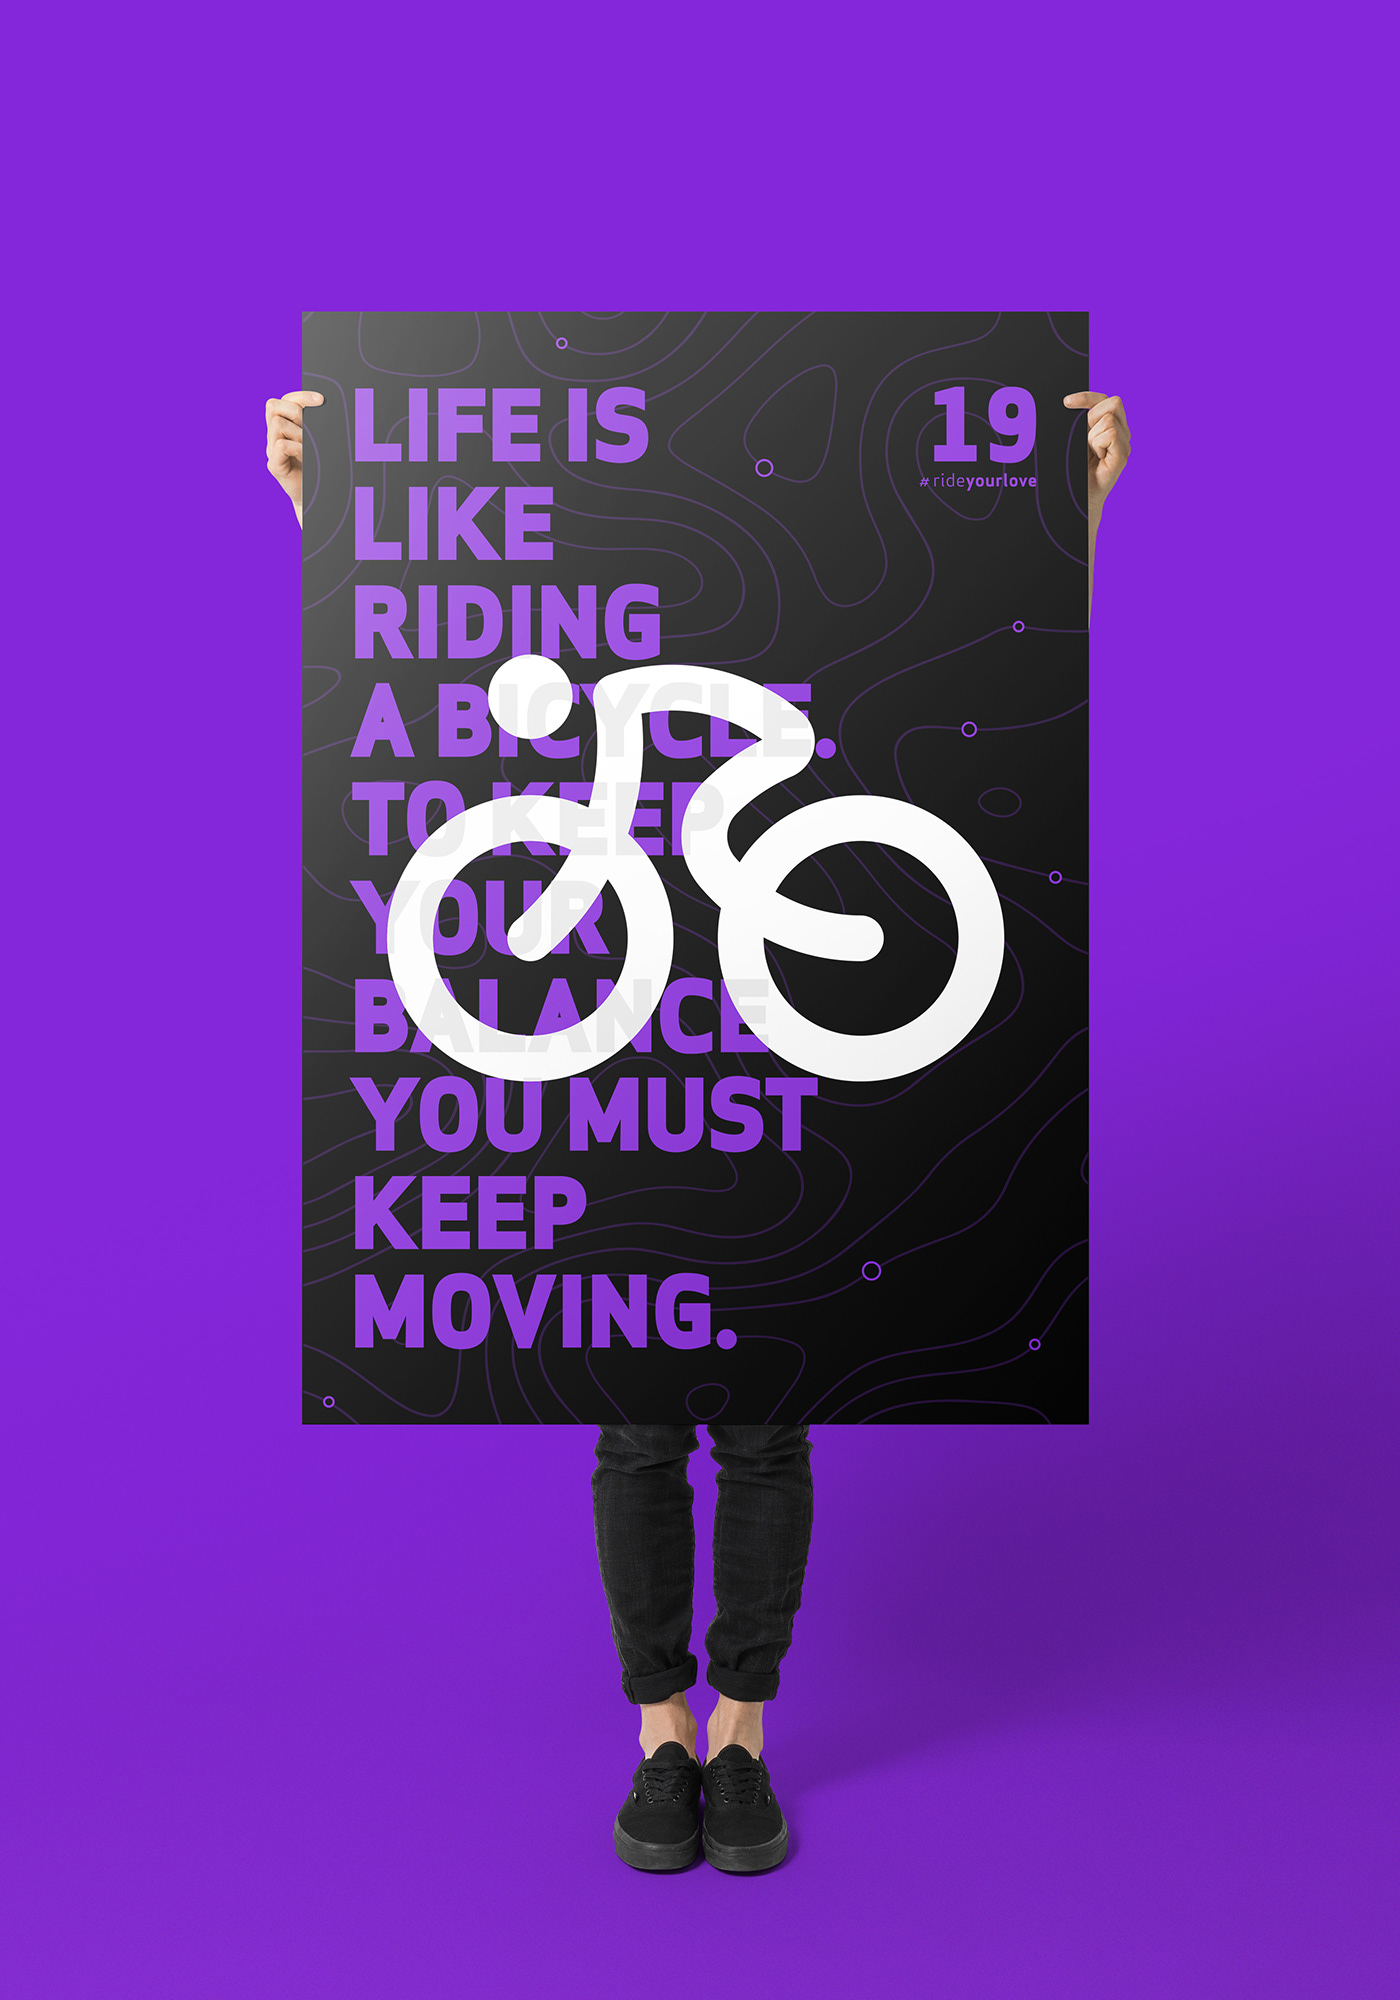 Icon symbol logo flat design design graphic Bicycle Bike